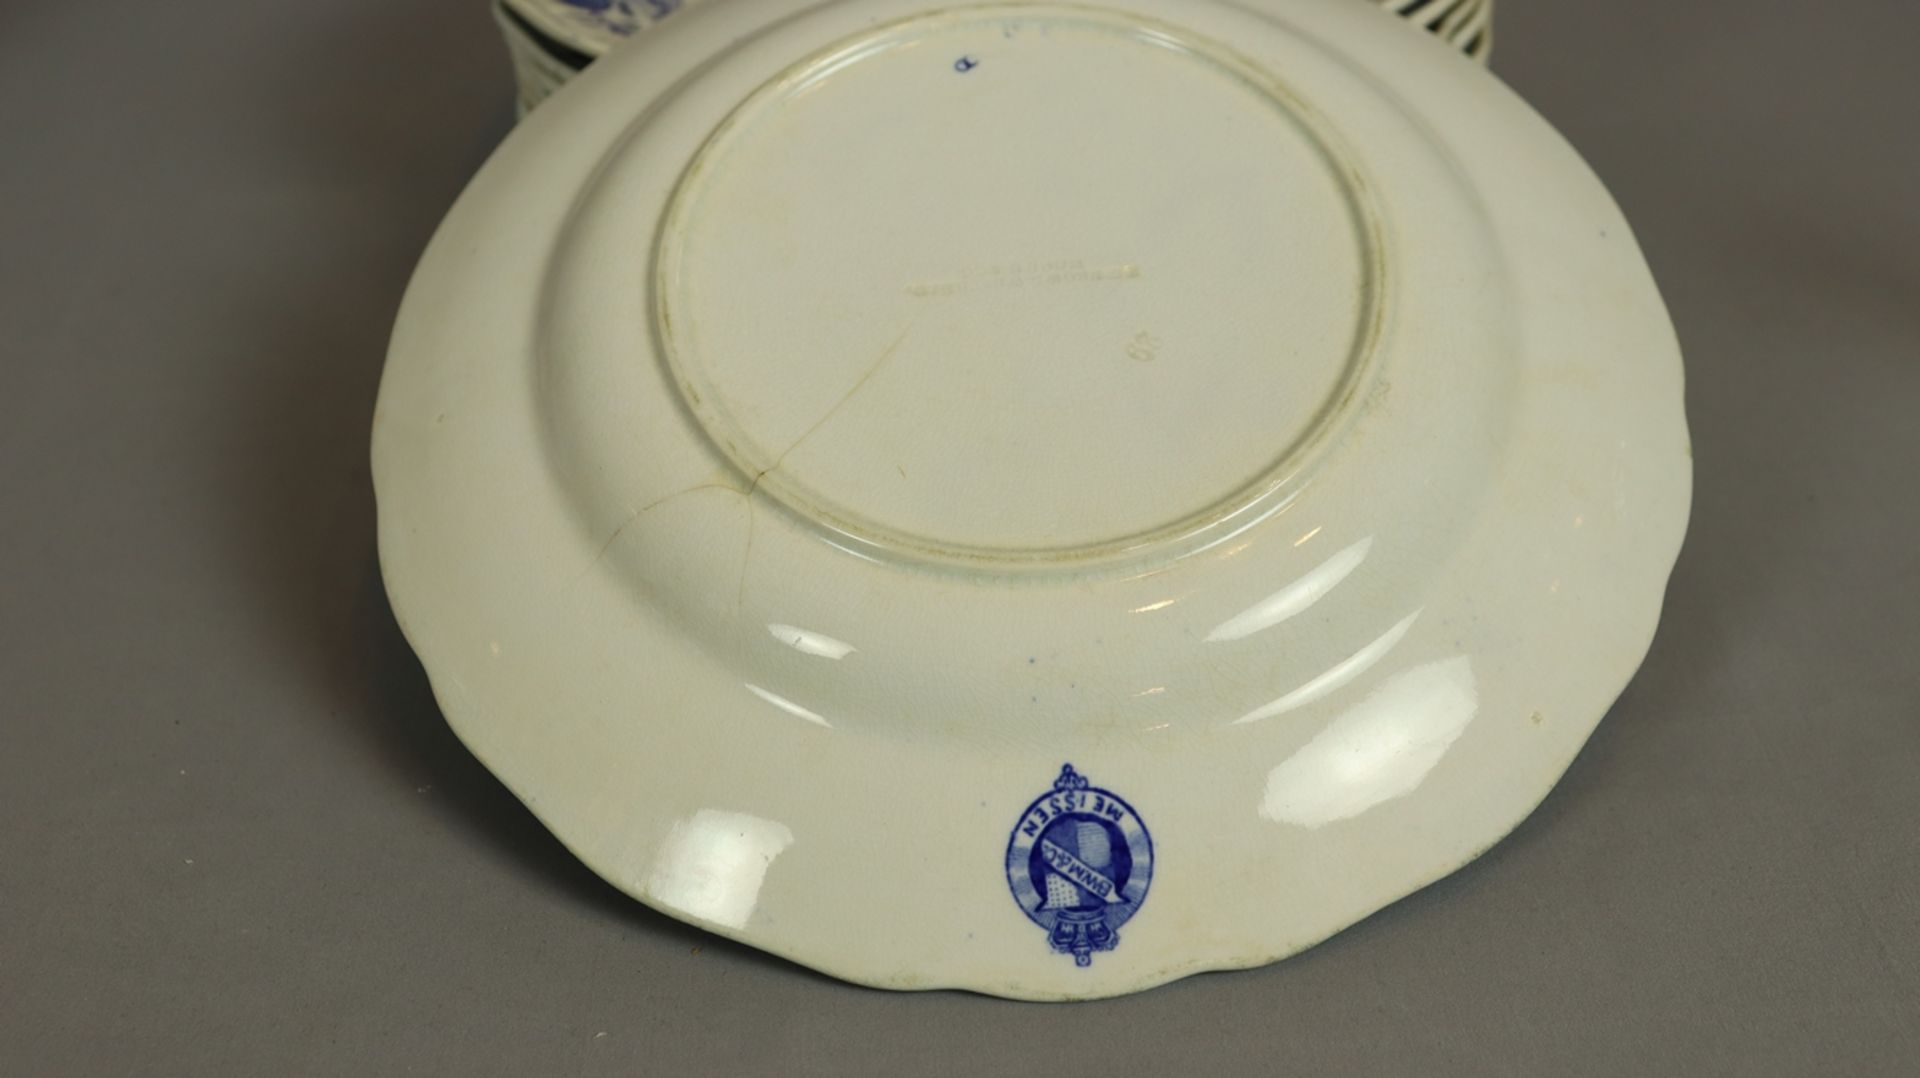 8 Essteller Stadt Meißen, Keramik um 1900, weißer Scherben, blau weiß verziert, wellenförmiger Rand - Bild 2 aus 2